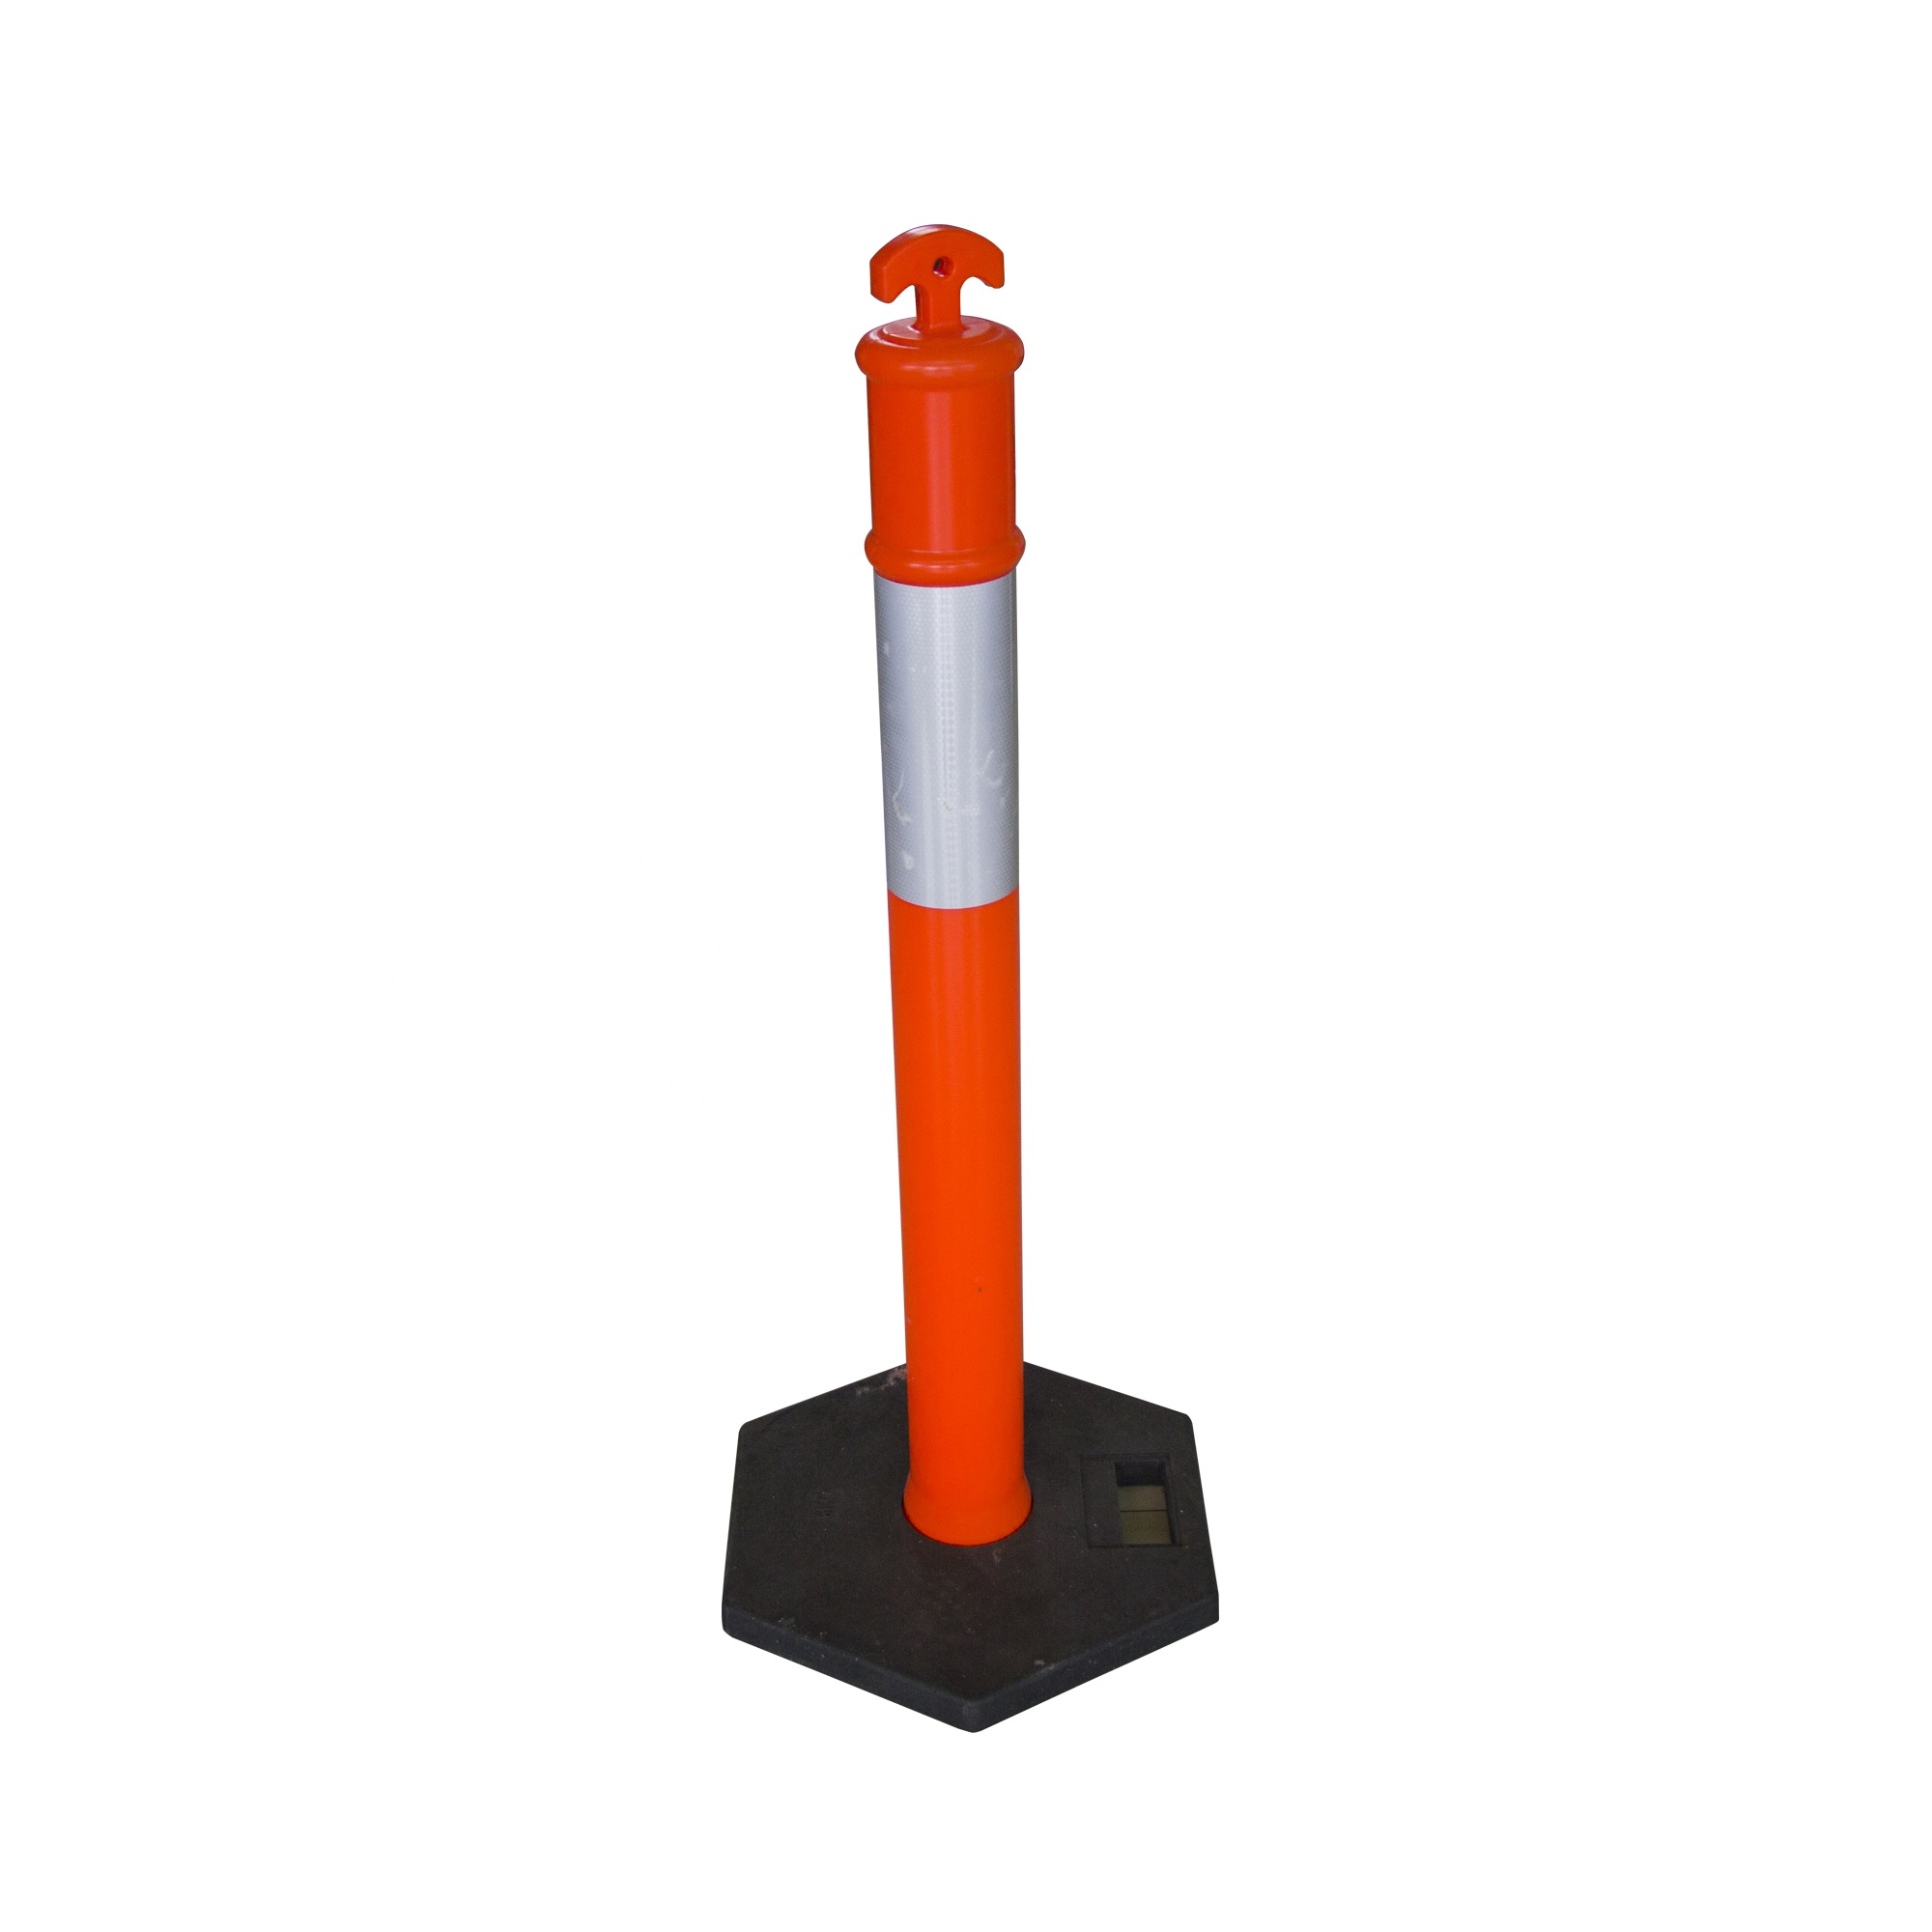 Poteau d'avertissement de trafic de panneau de signalisation de qualité garantie orange amovible avec base